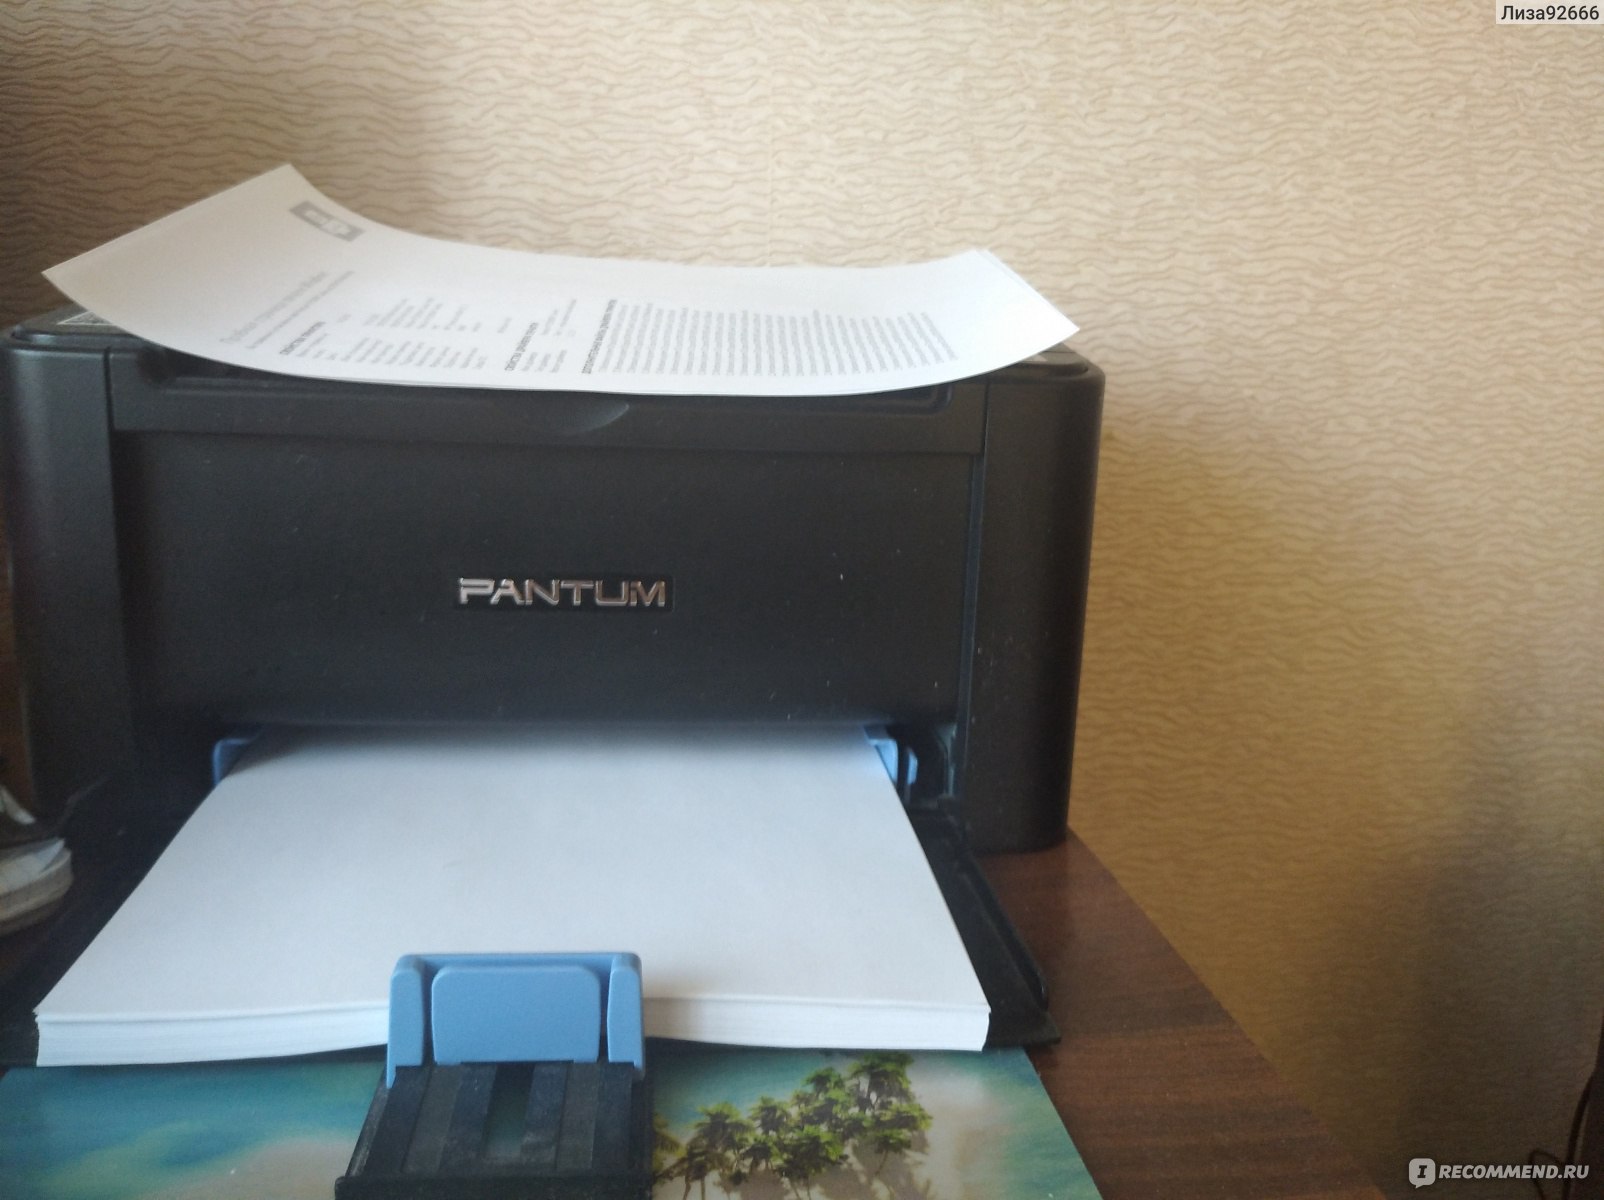 Принтер Pantum P2500w фото